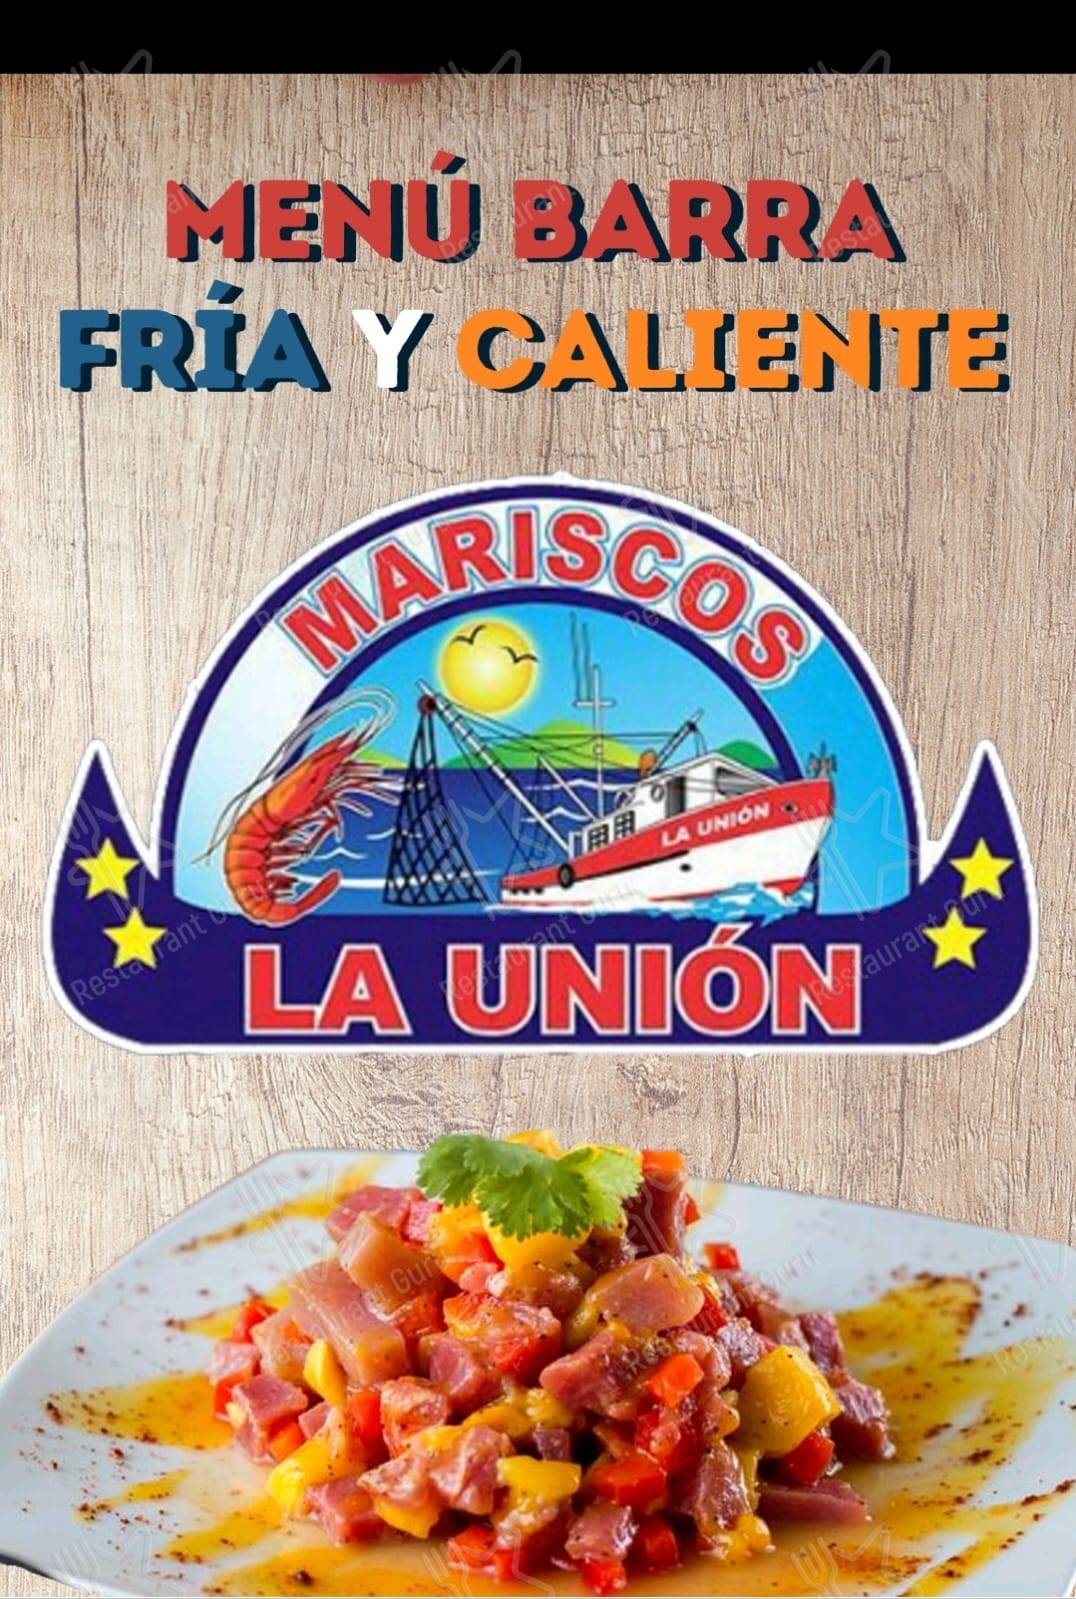 Menu at MARISCOS LA UNION restaurant, Mazatlán